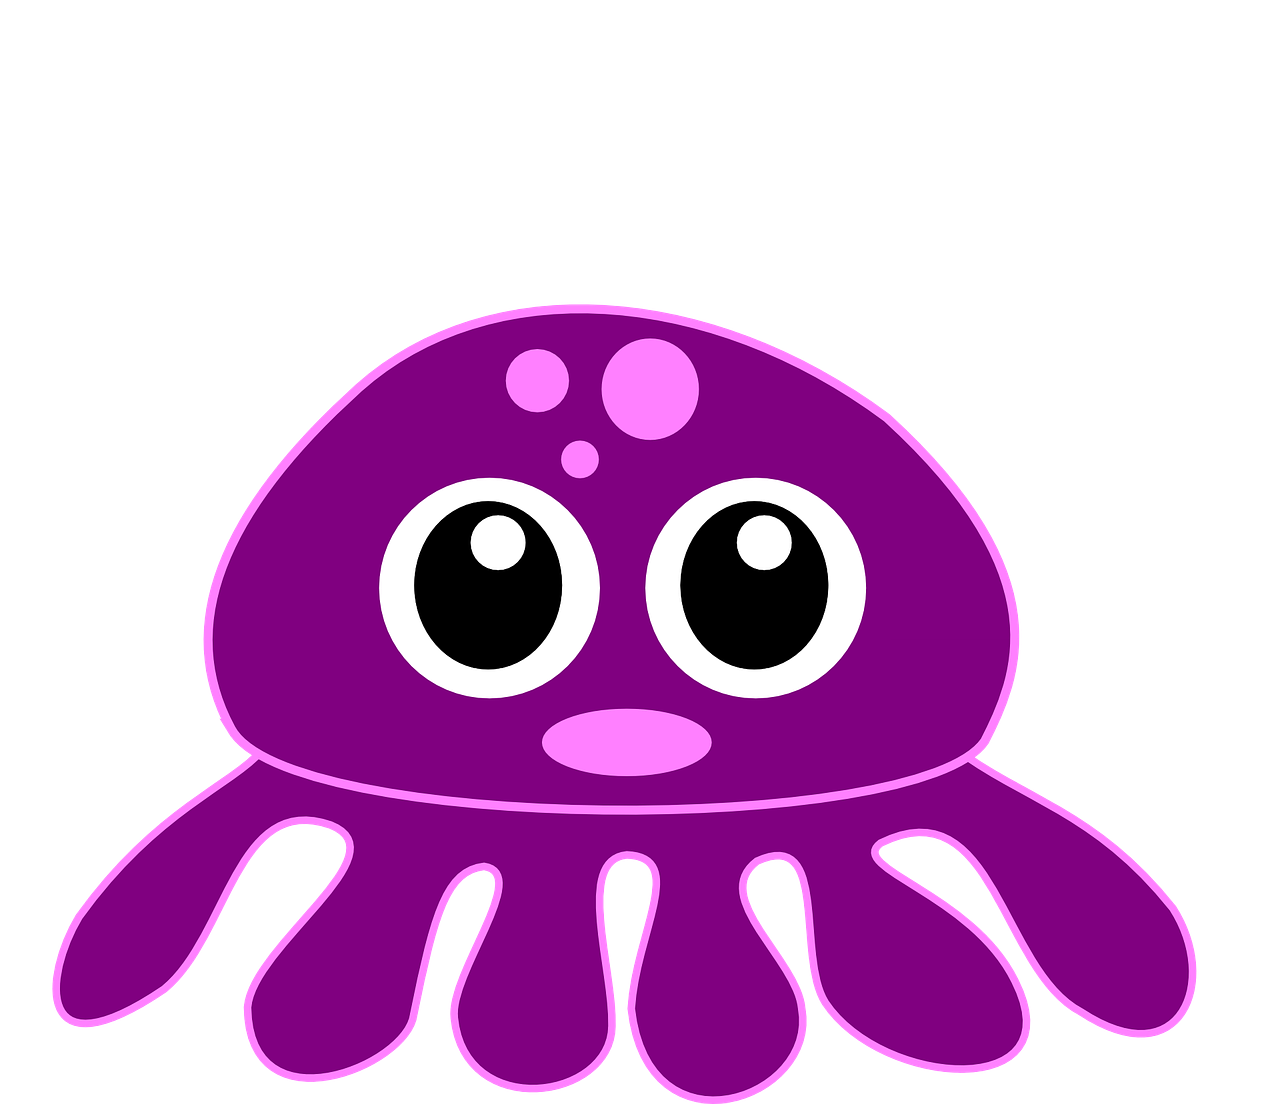 octopus kraken purple free photo